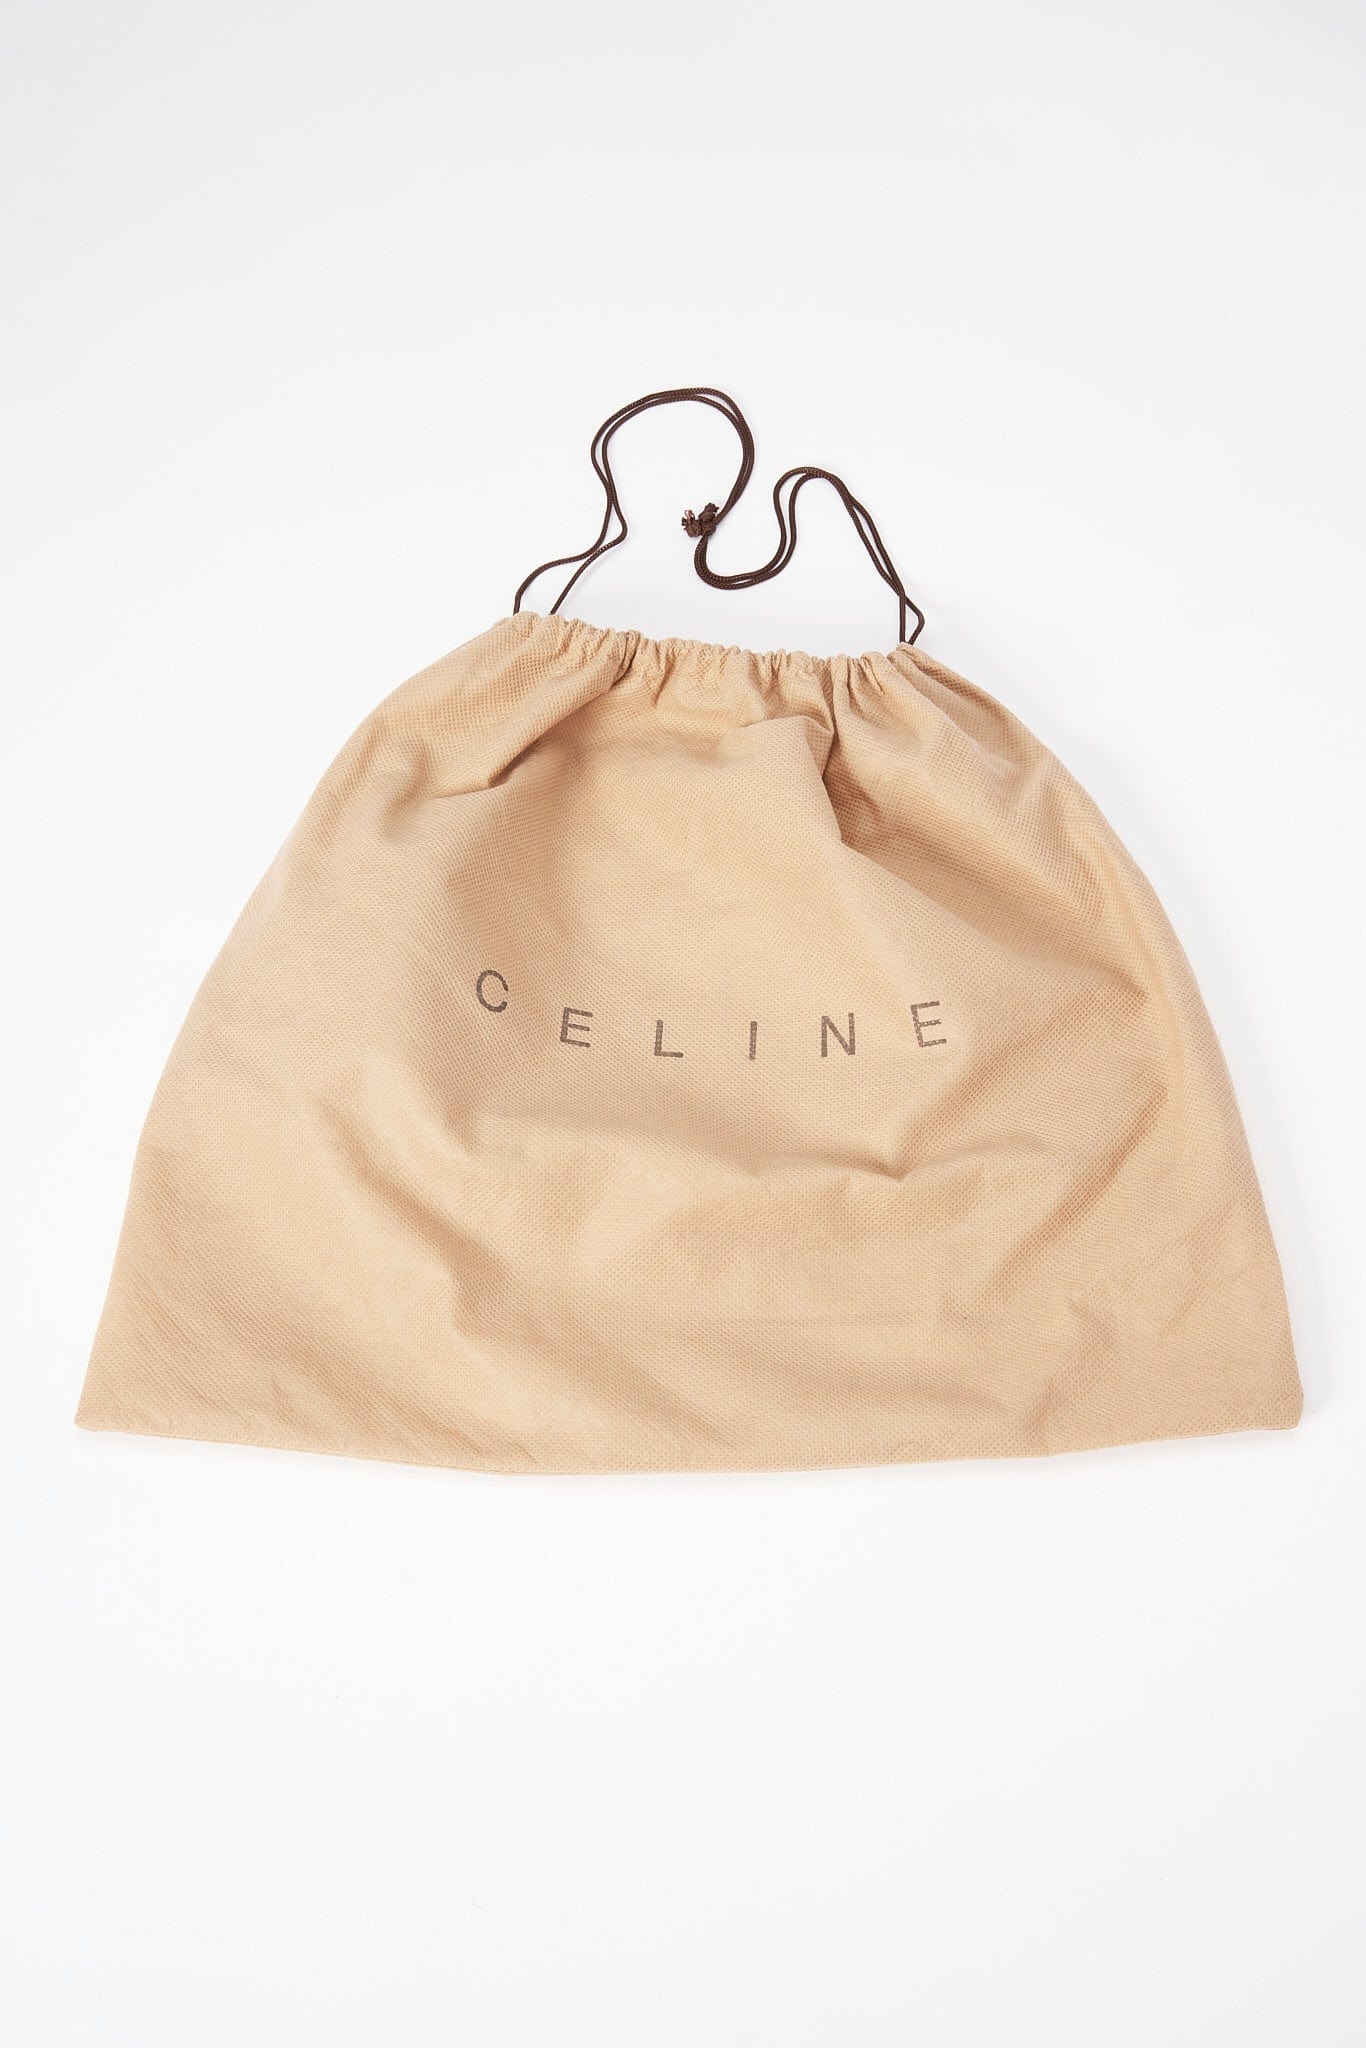 Vintage Celine Suede Bag